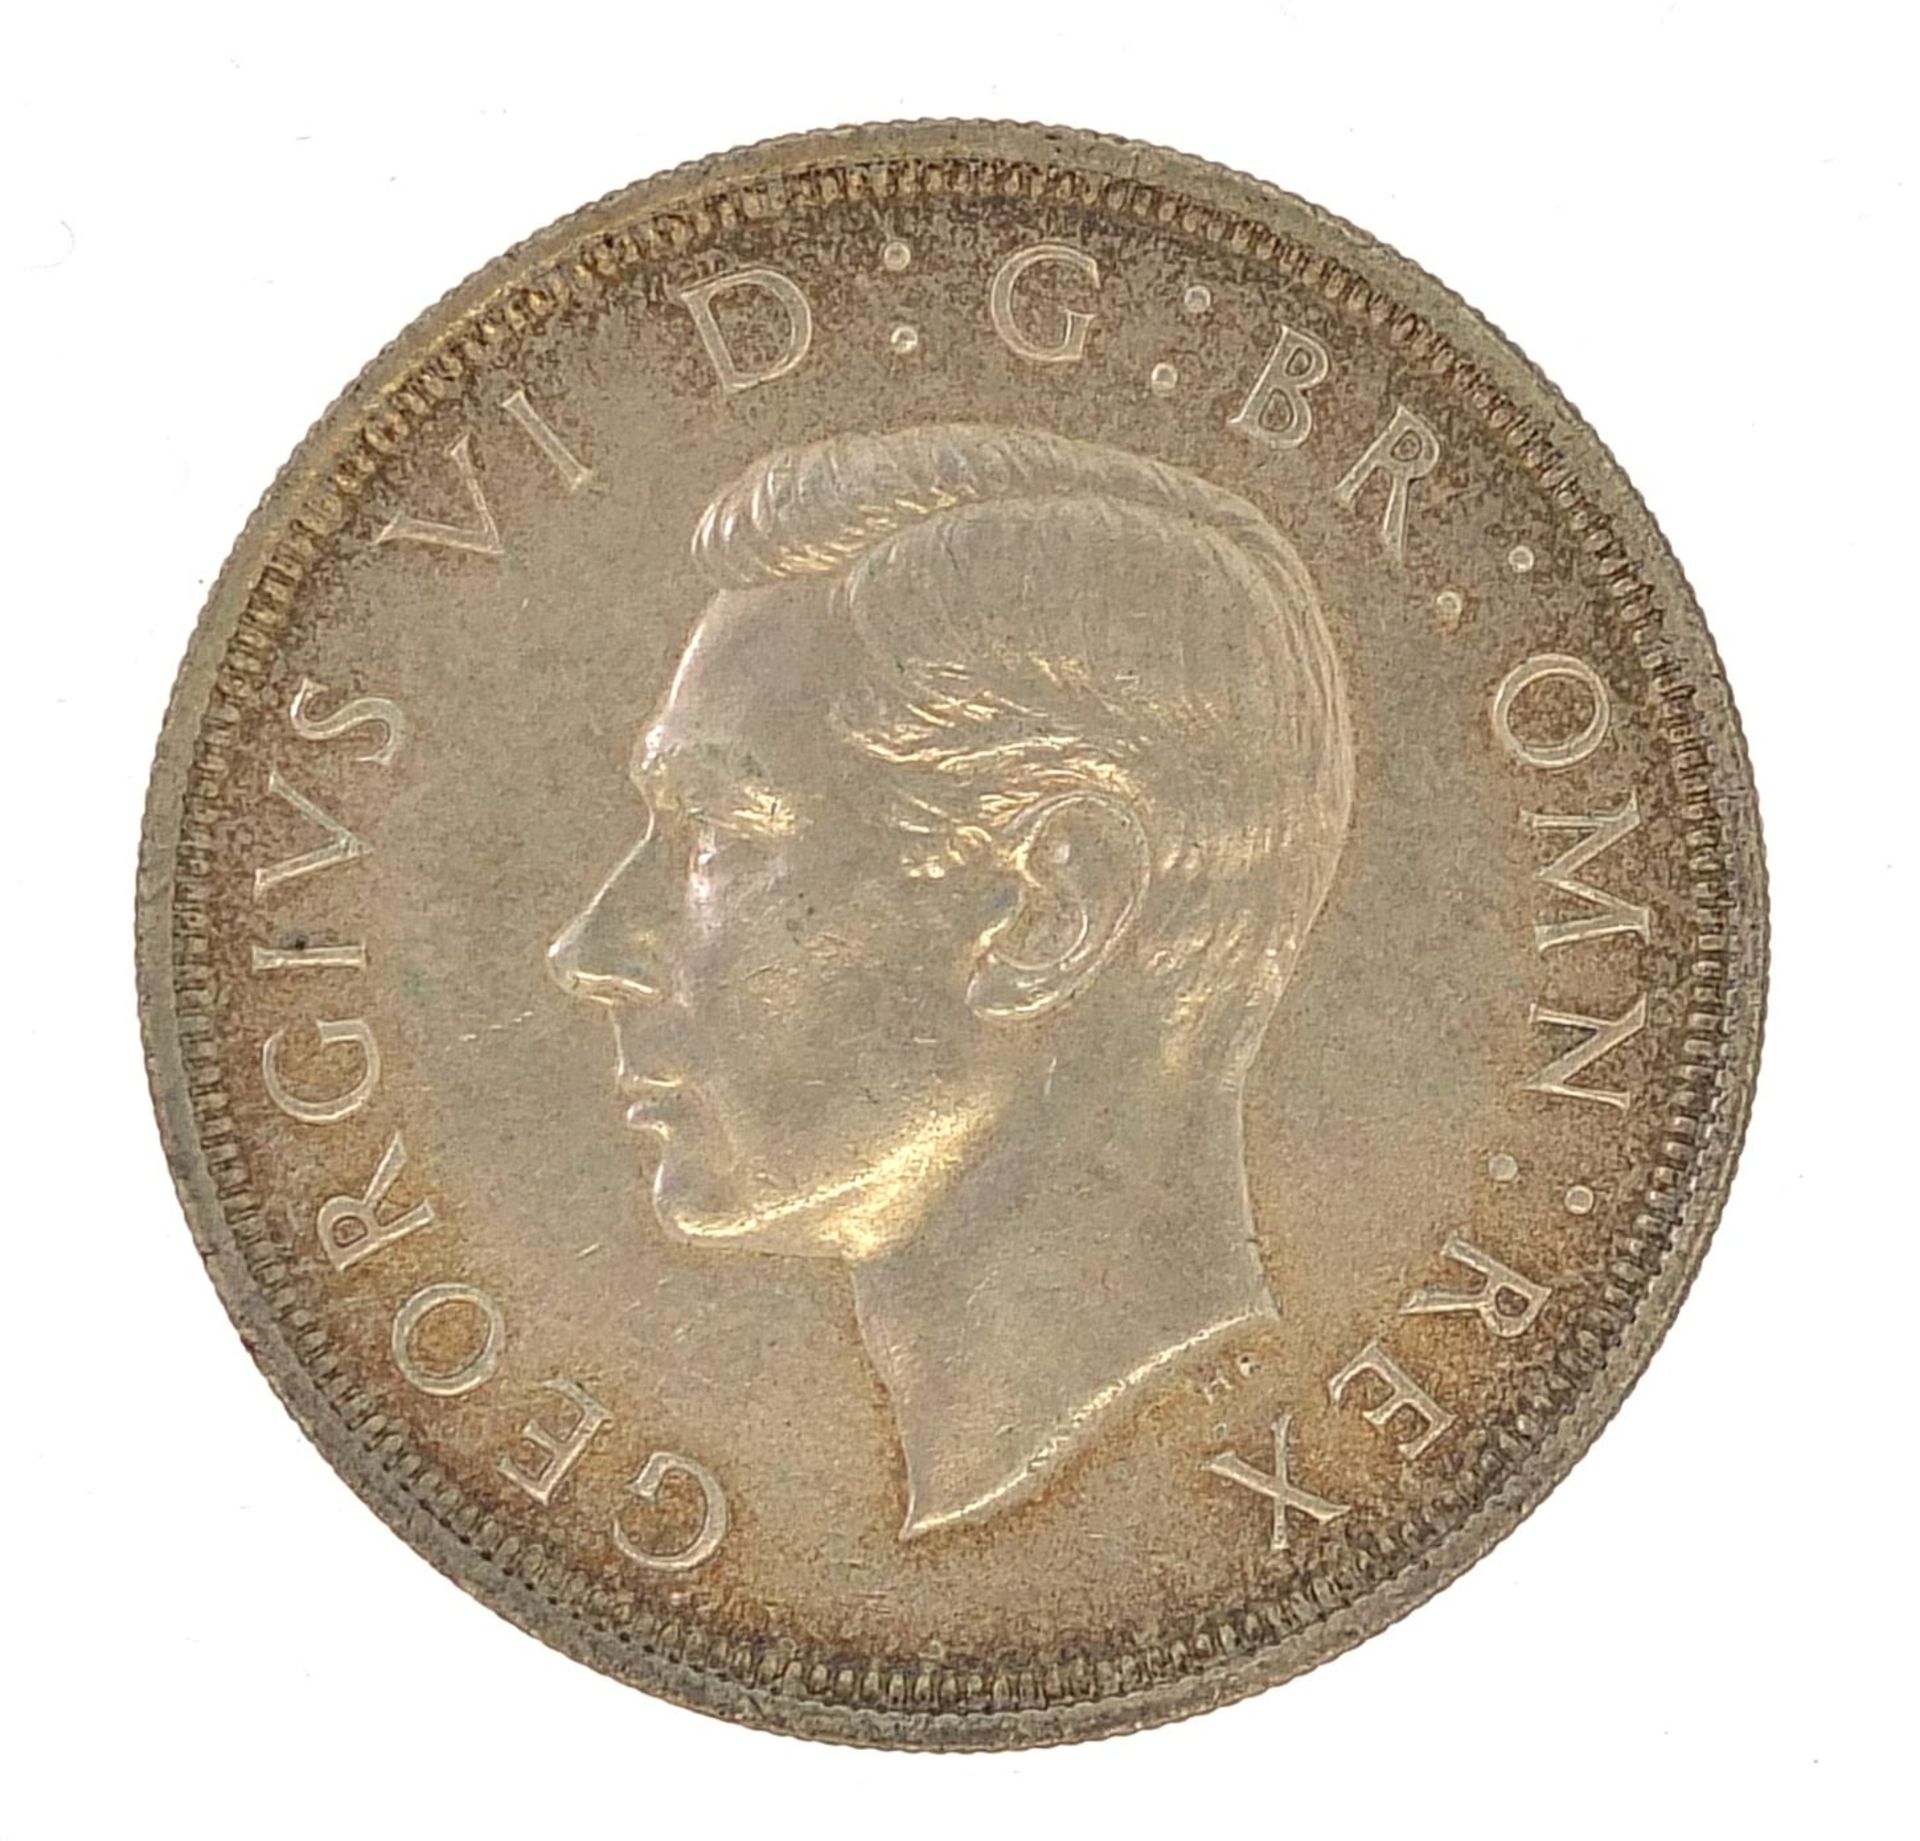 George VI 1937 crown - Image 2 of 2